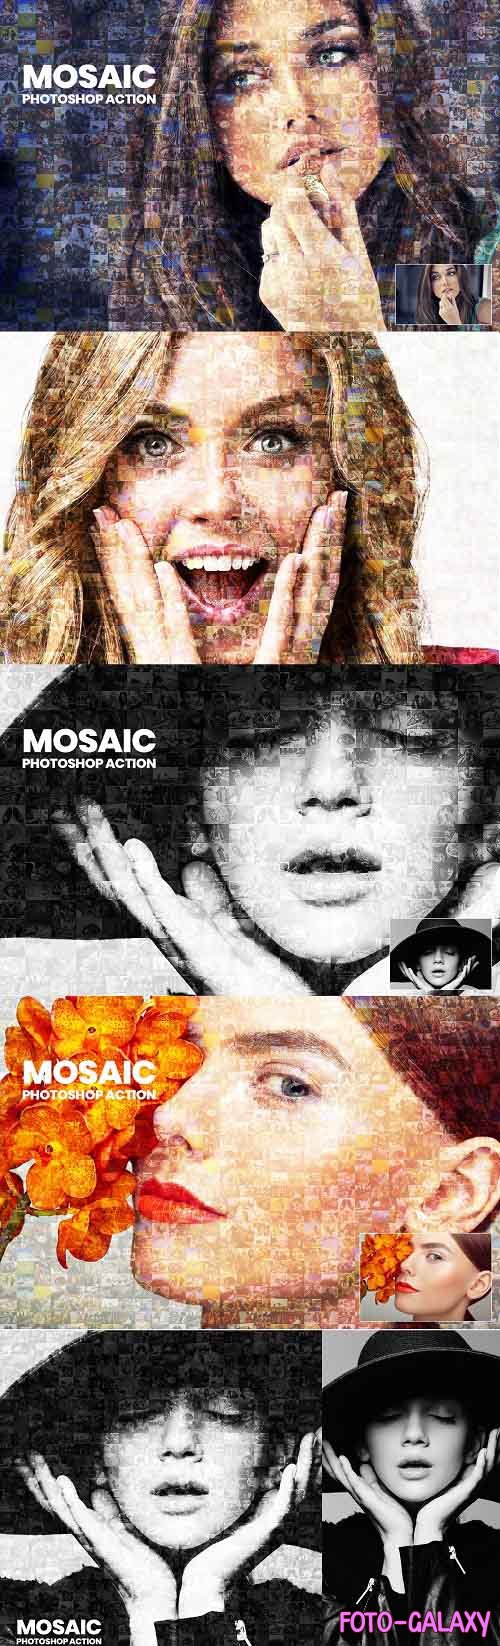 Mosaic Photo Photoshop Action - 3136015